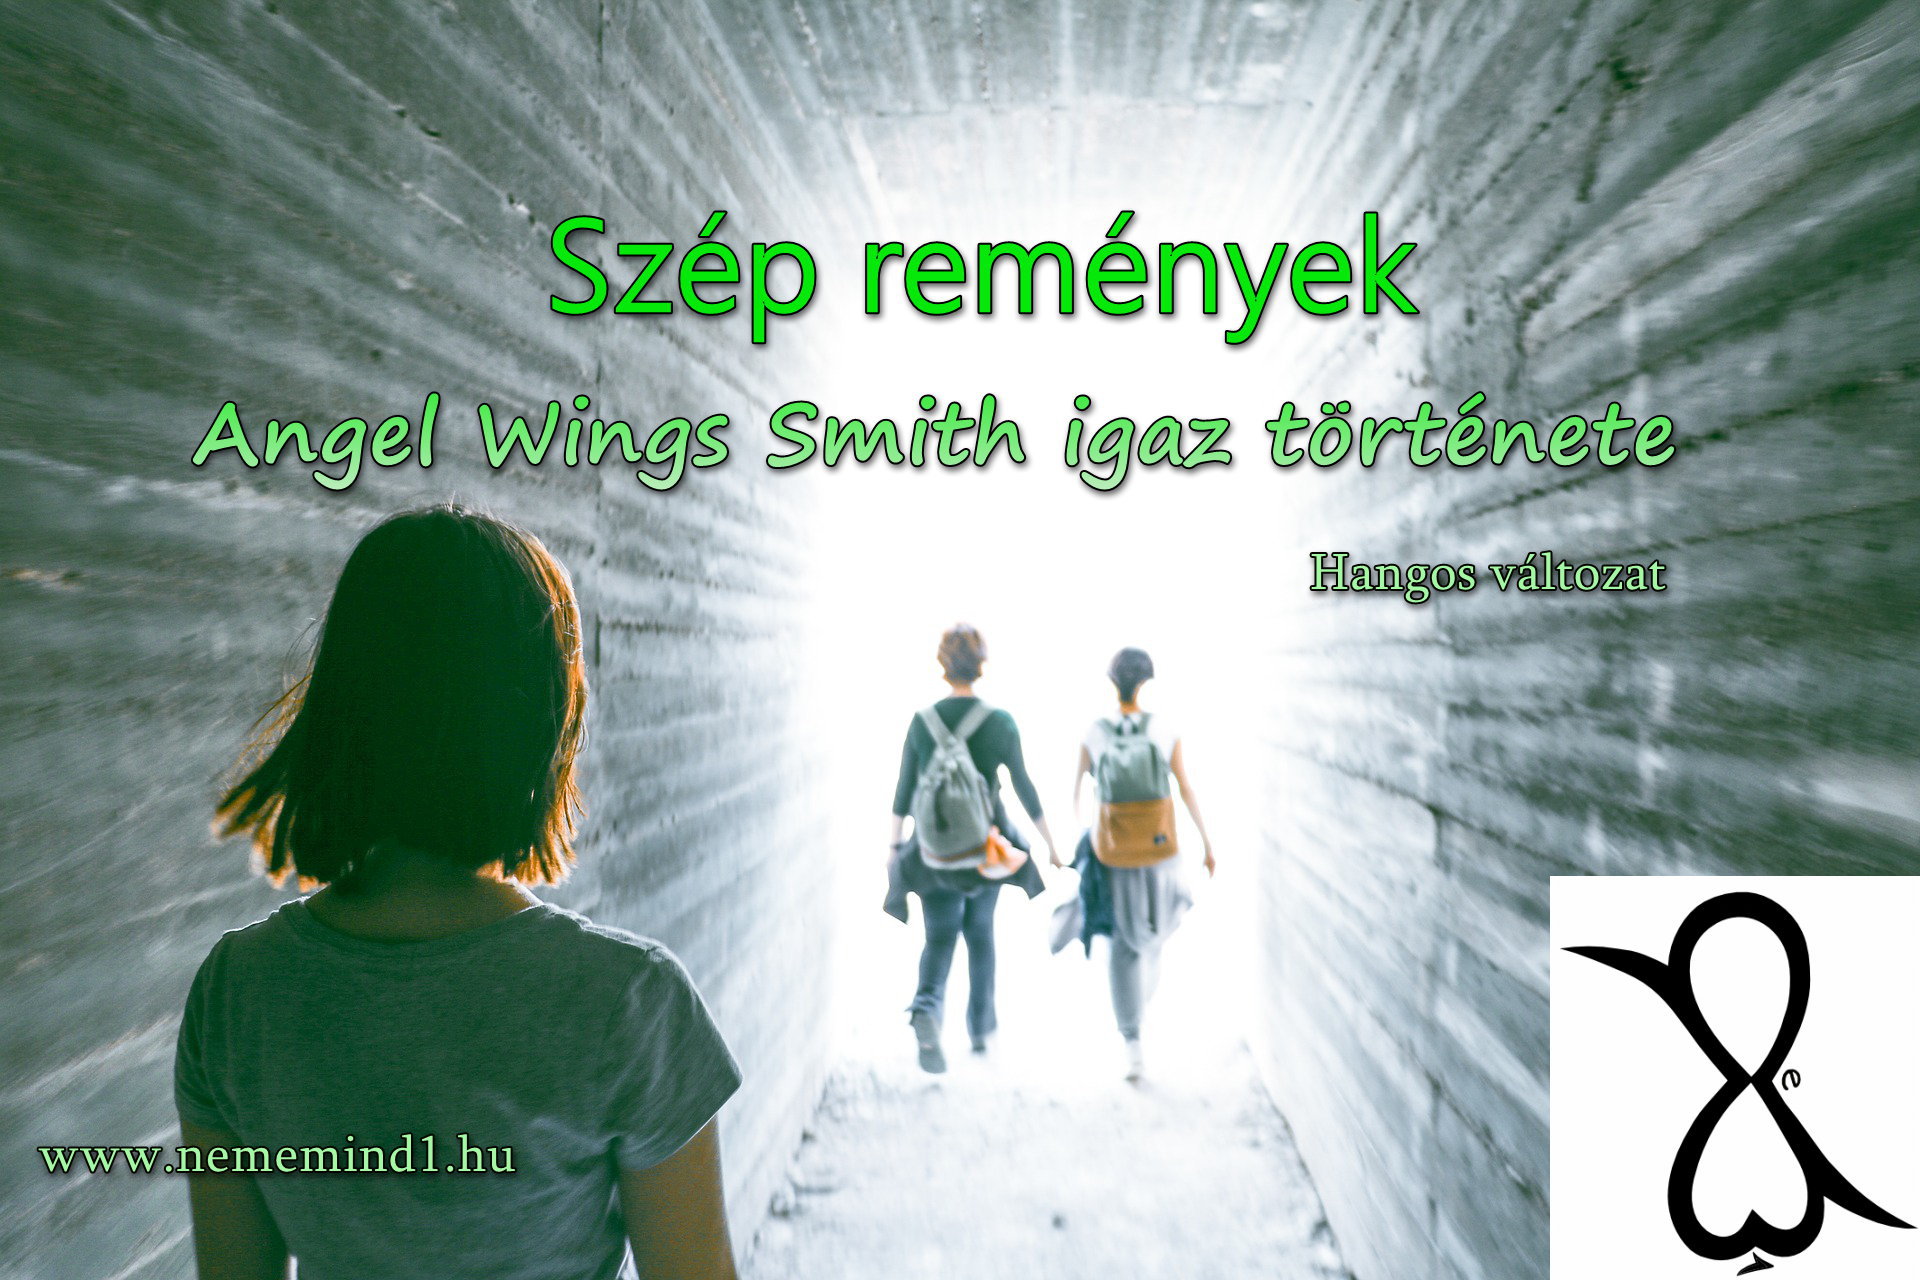 You are currently viewing Hangos igaz történeteink 82, Angel Wings Smith igaz története:  Szép remények